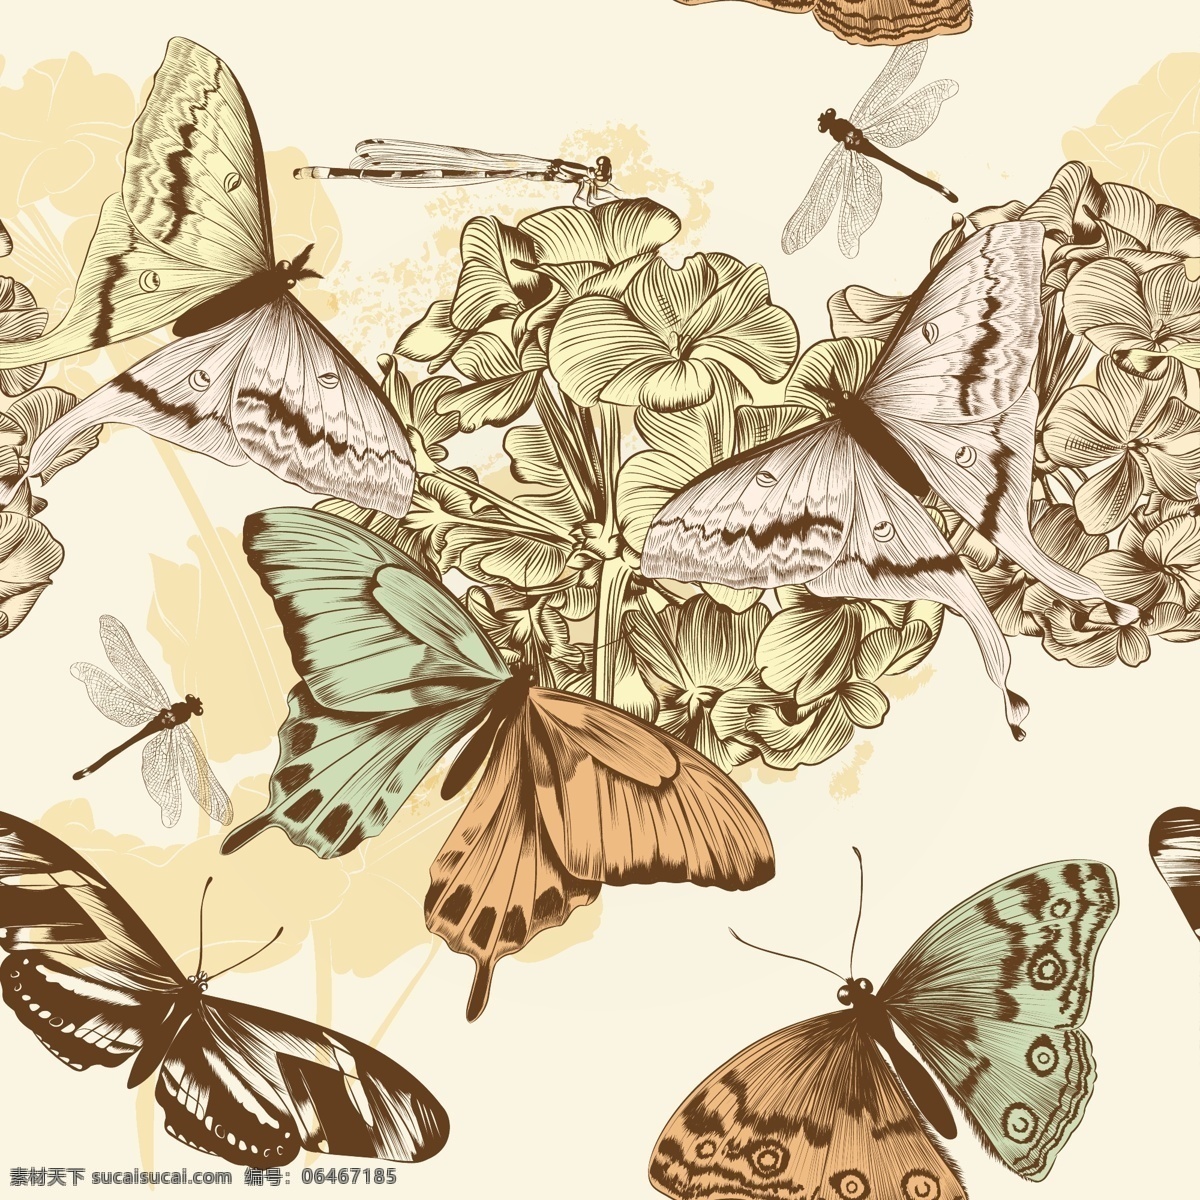 蝴蝶 花鸟 图案 矢量素材 矢量图 设计素材 鲜花 花朵 小鸟 复古 怀旧 无缝